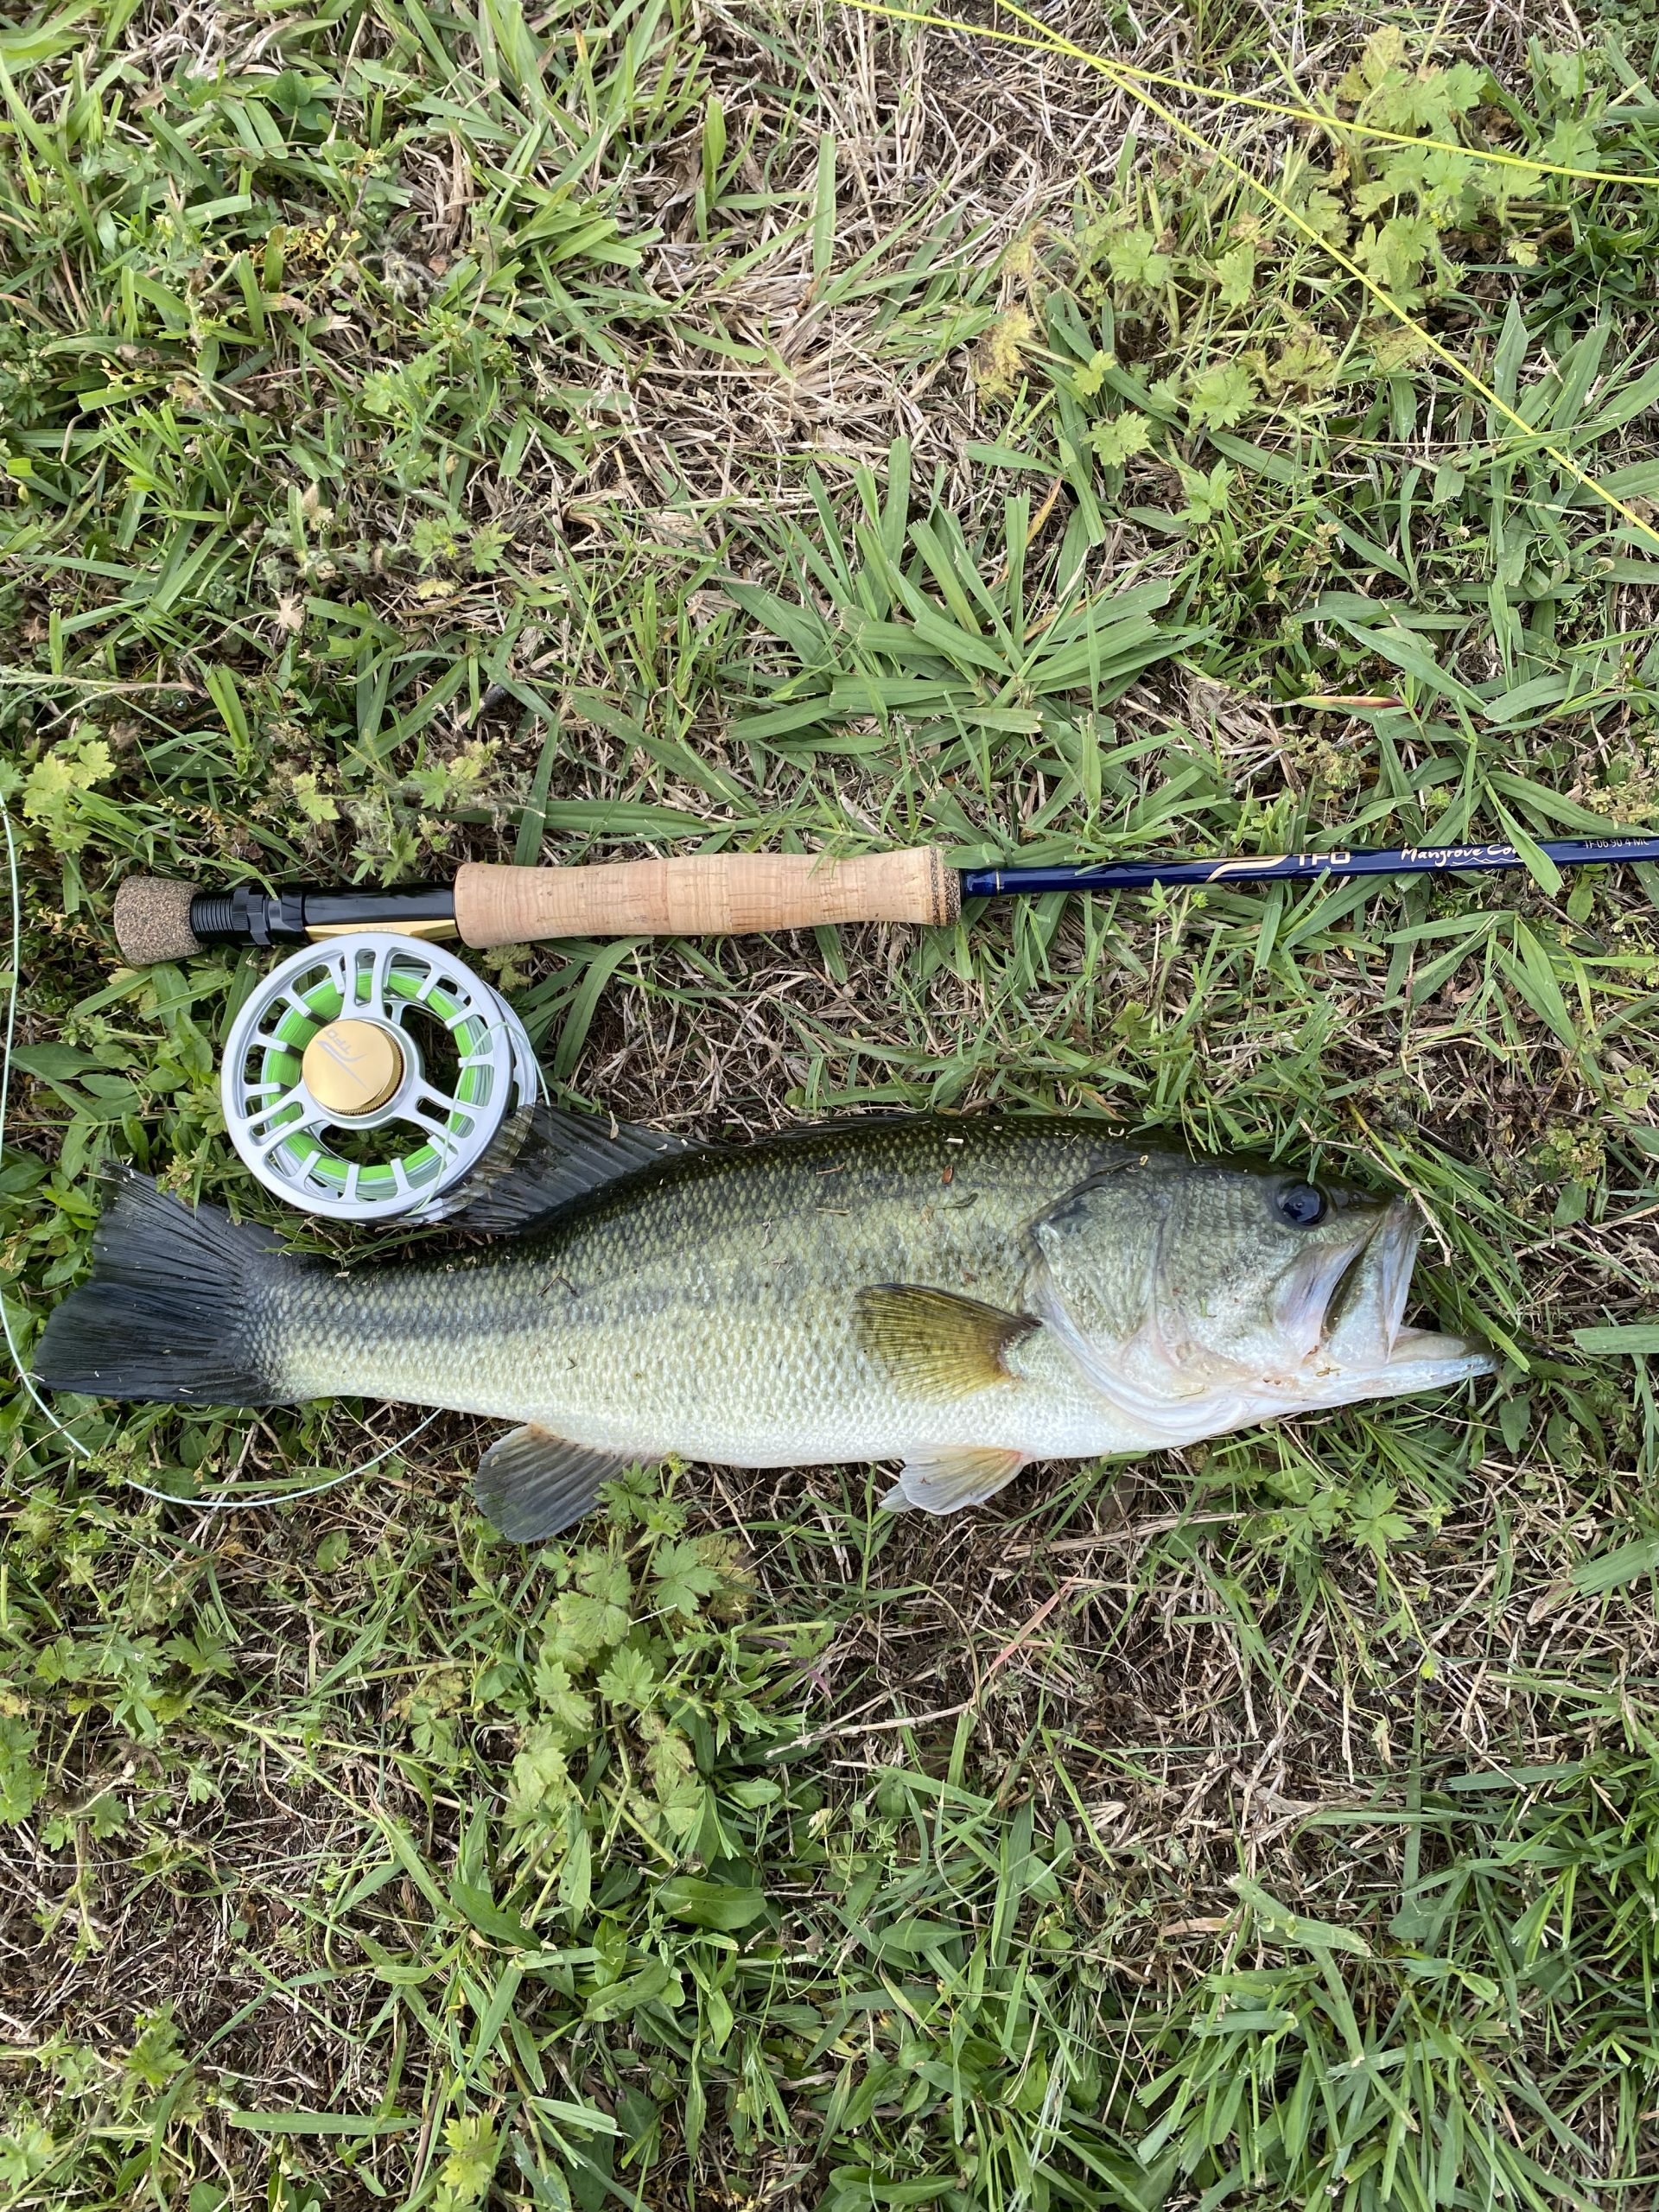 My biggest bass on the fly rod so far (5wt) : r/flyfishing